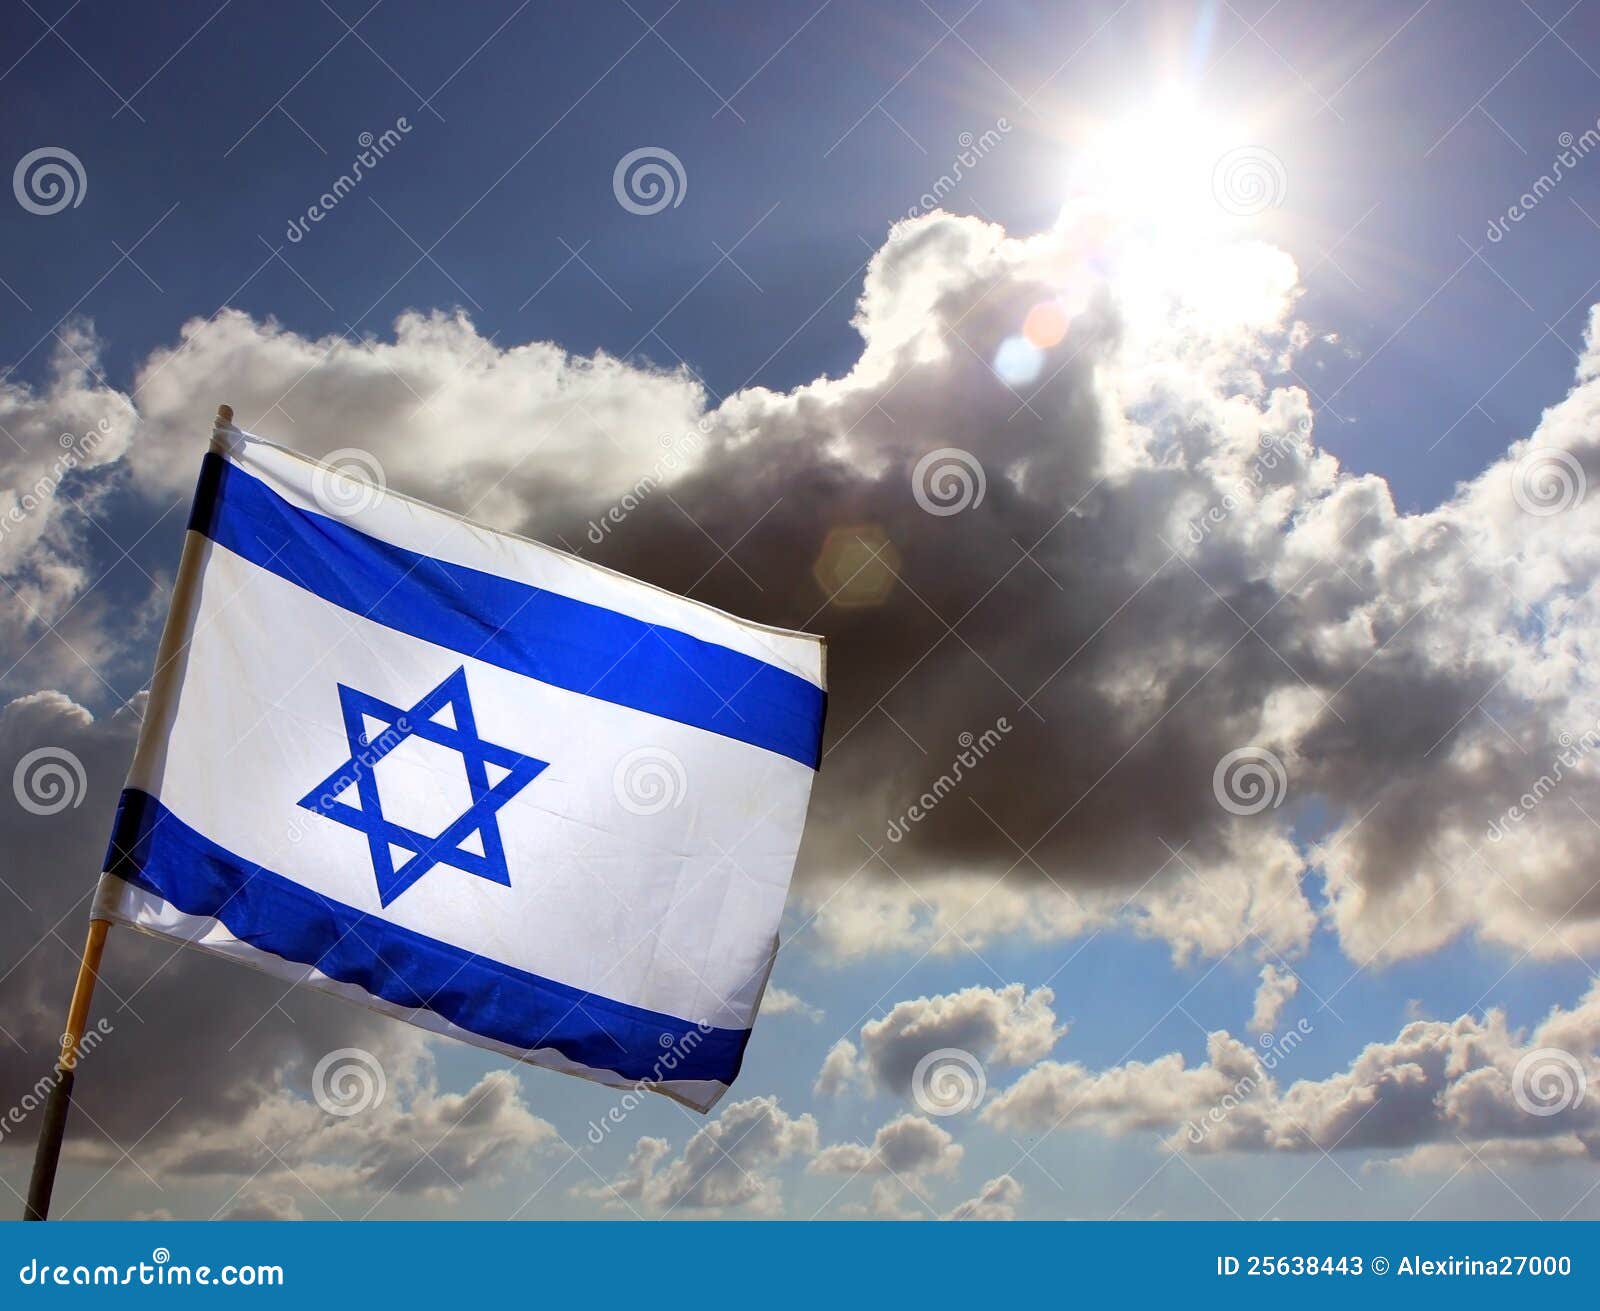 israeli flag against cloudy sky